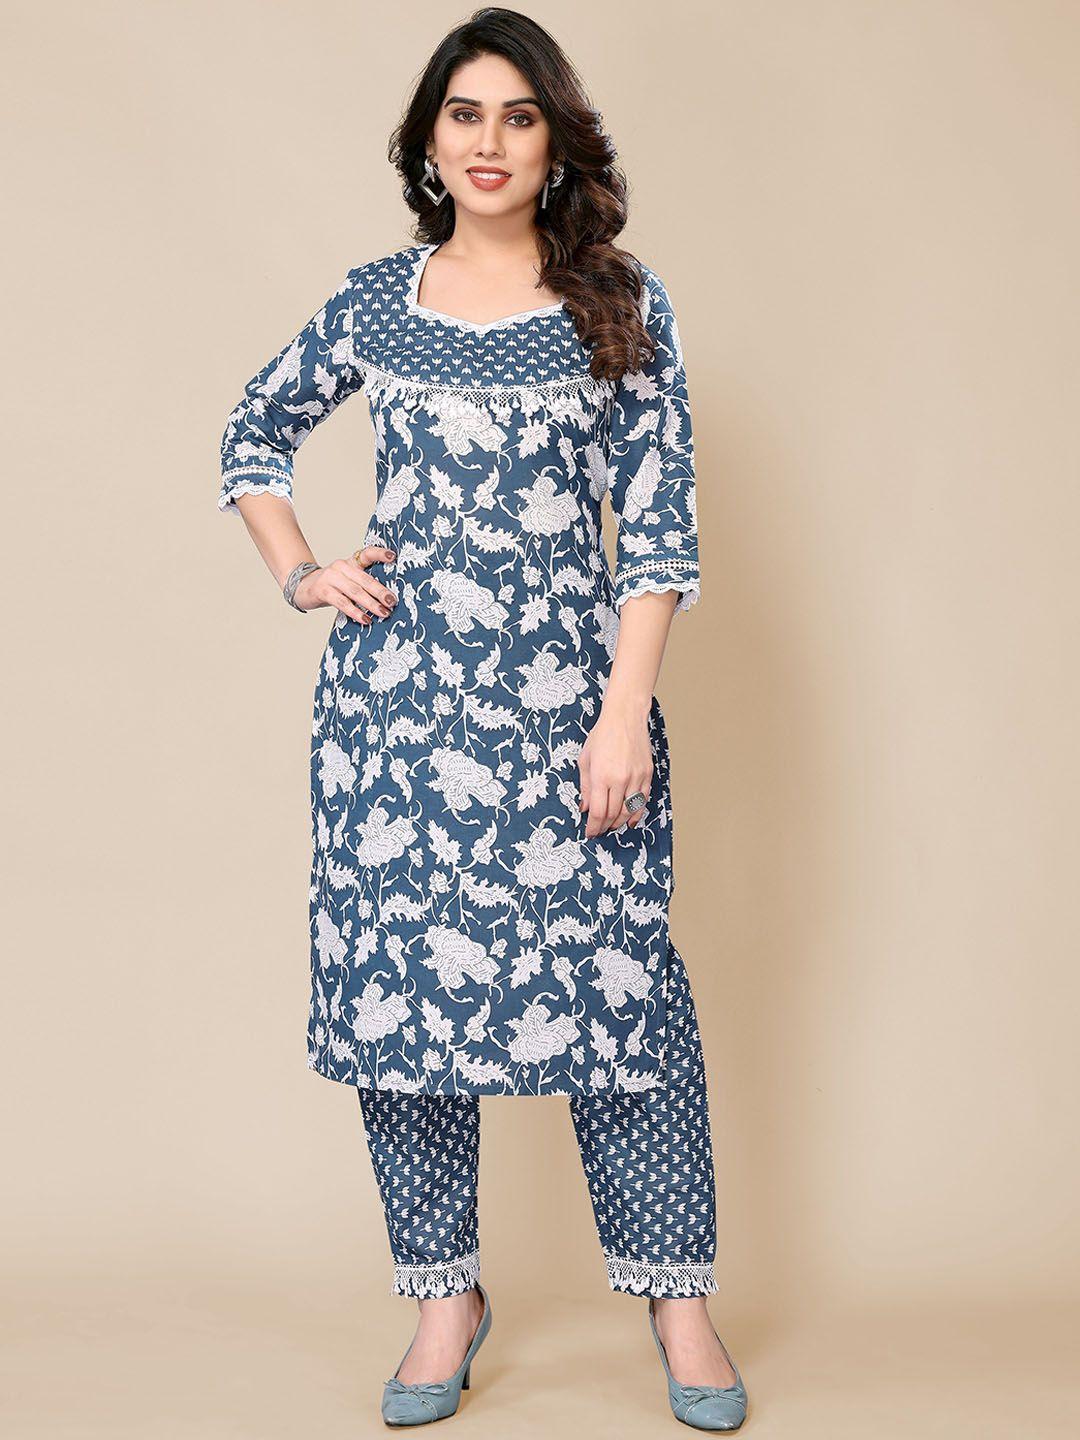 pyari - a style for every story floral printed straight kurta with pyjamas